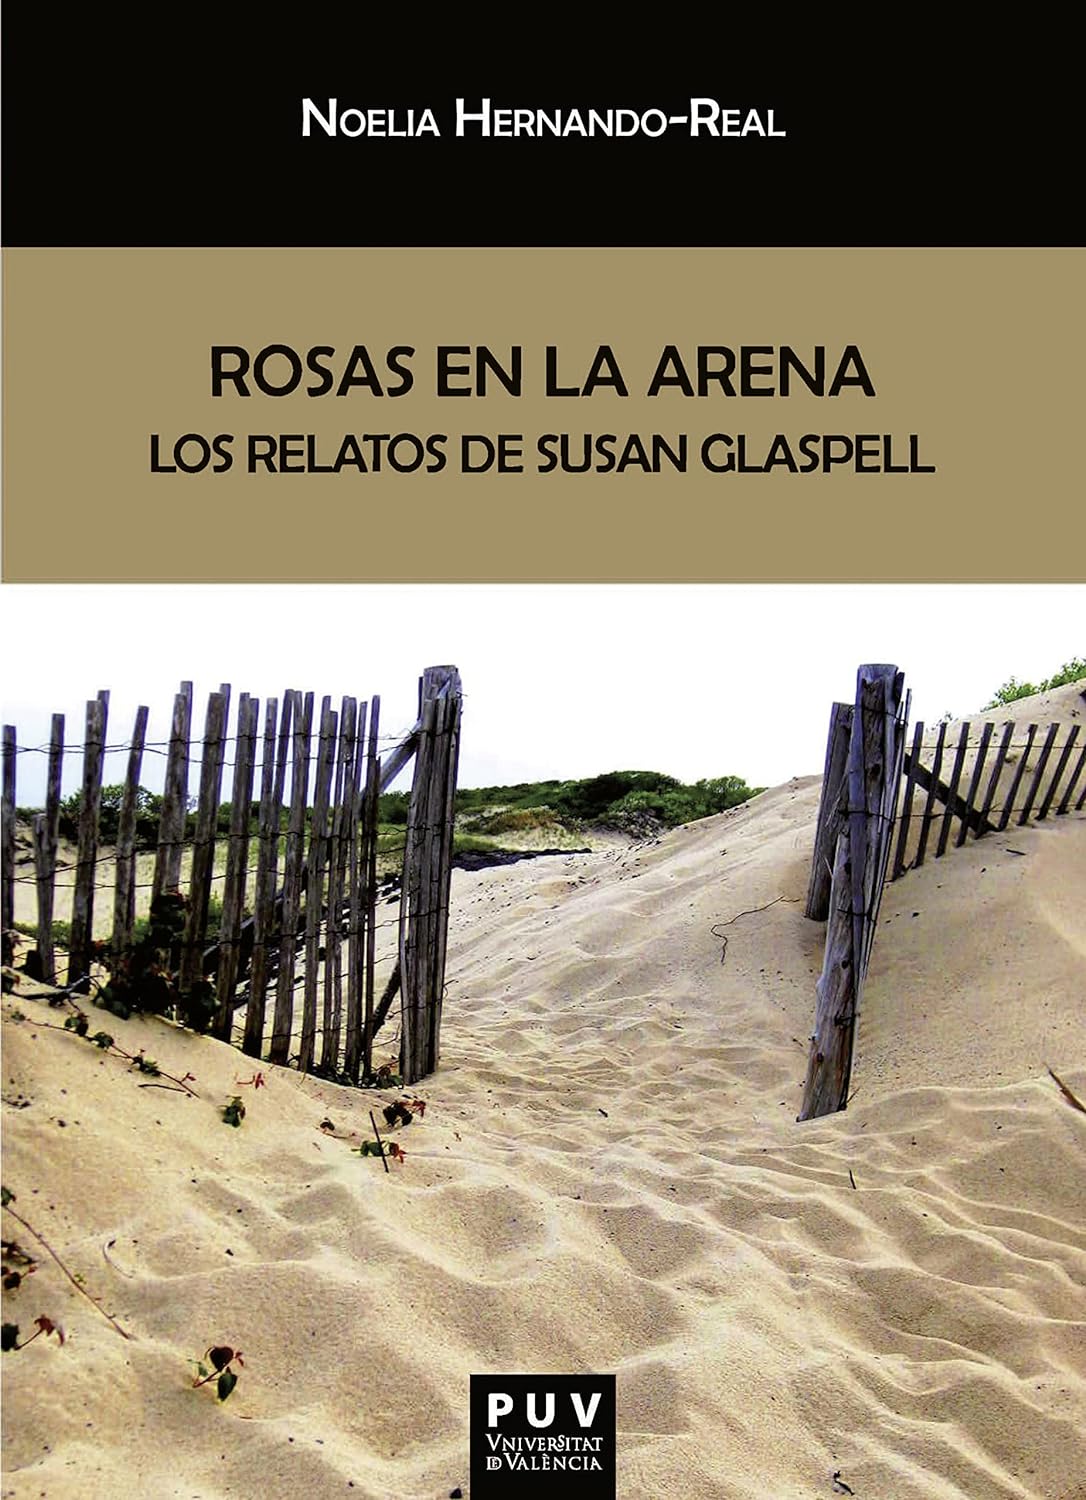 Imagen de portada del libro Rosas en la arena